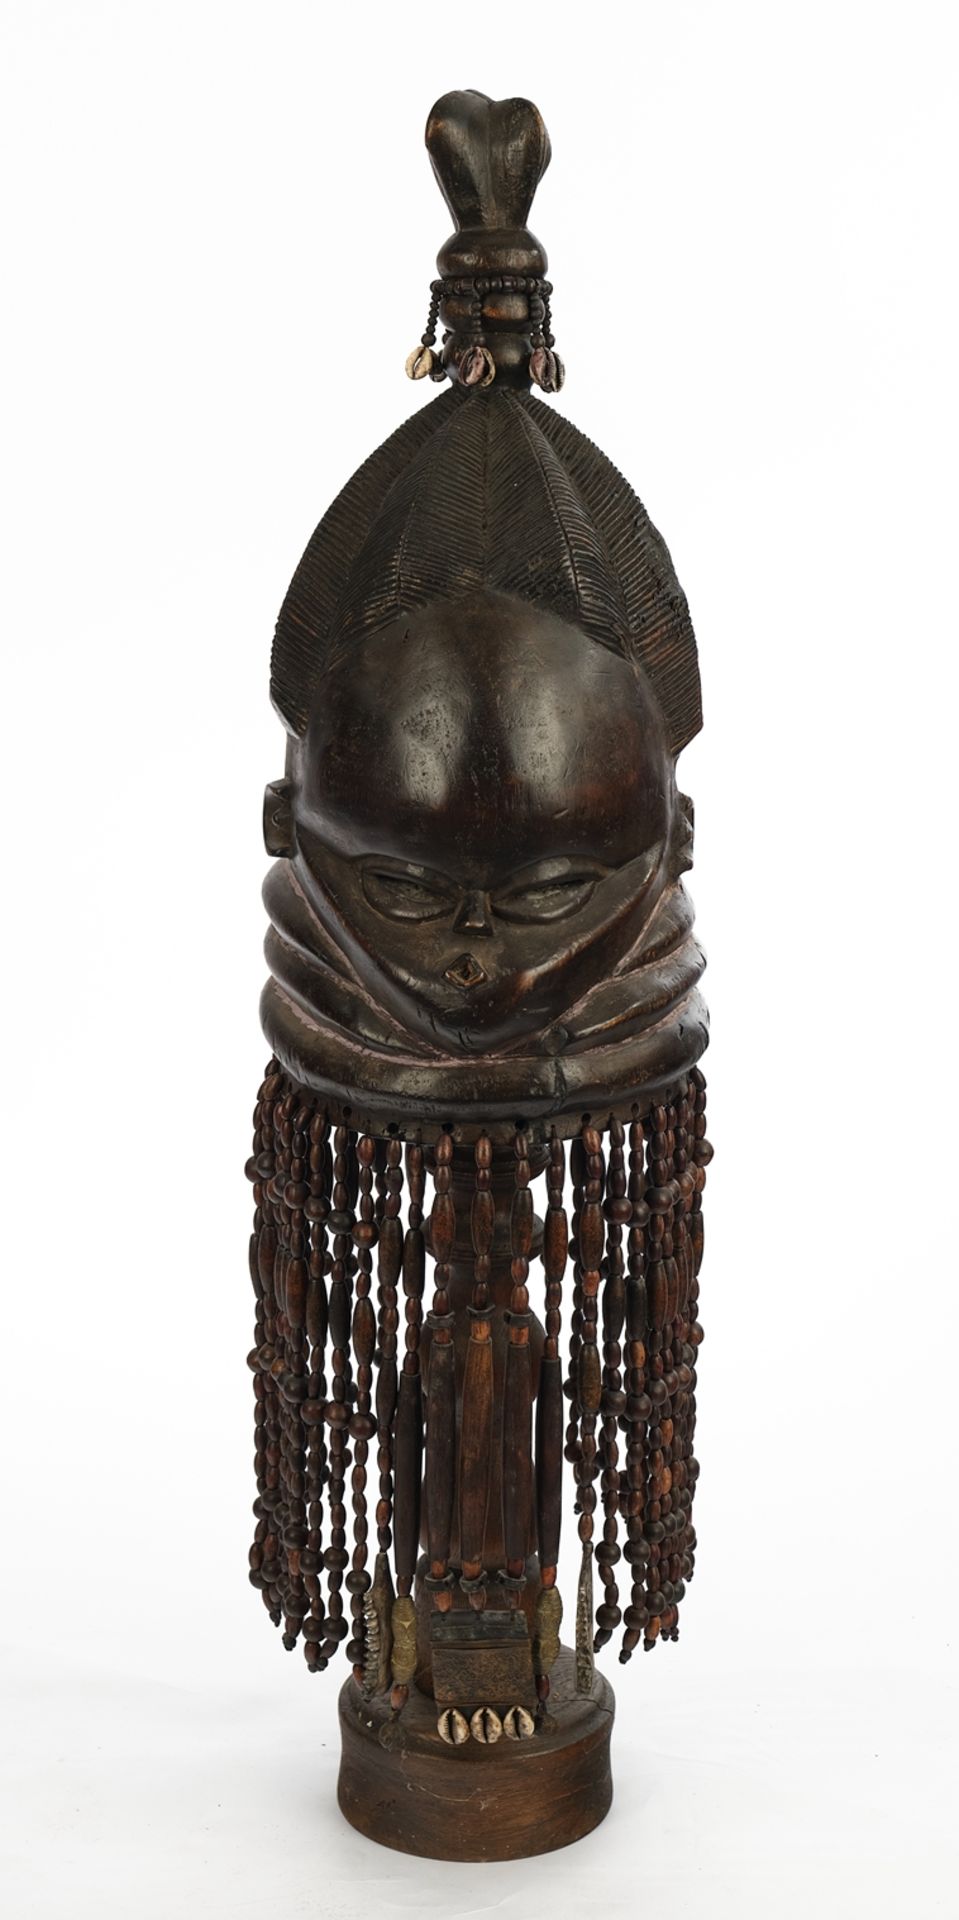 Helm-Stülpmaske, weiblich, Sande, Mende, Sierra Leone, Afrika, Holz, schwarzbraun patiniert, Gesich